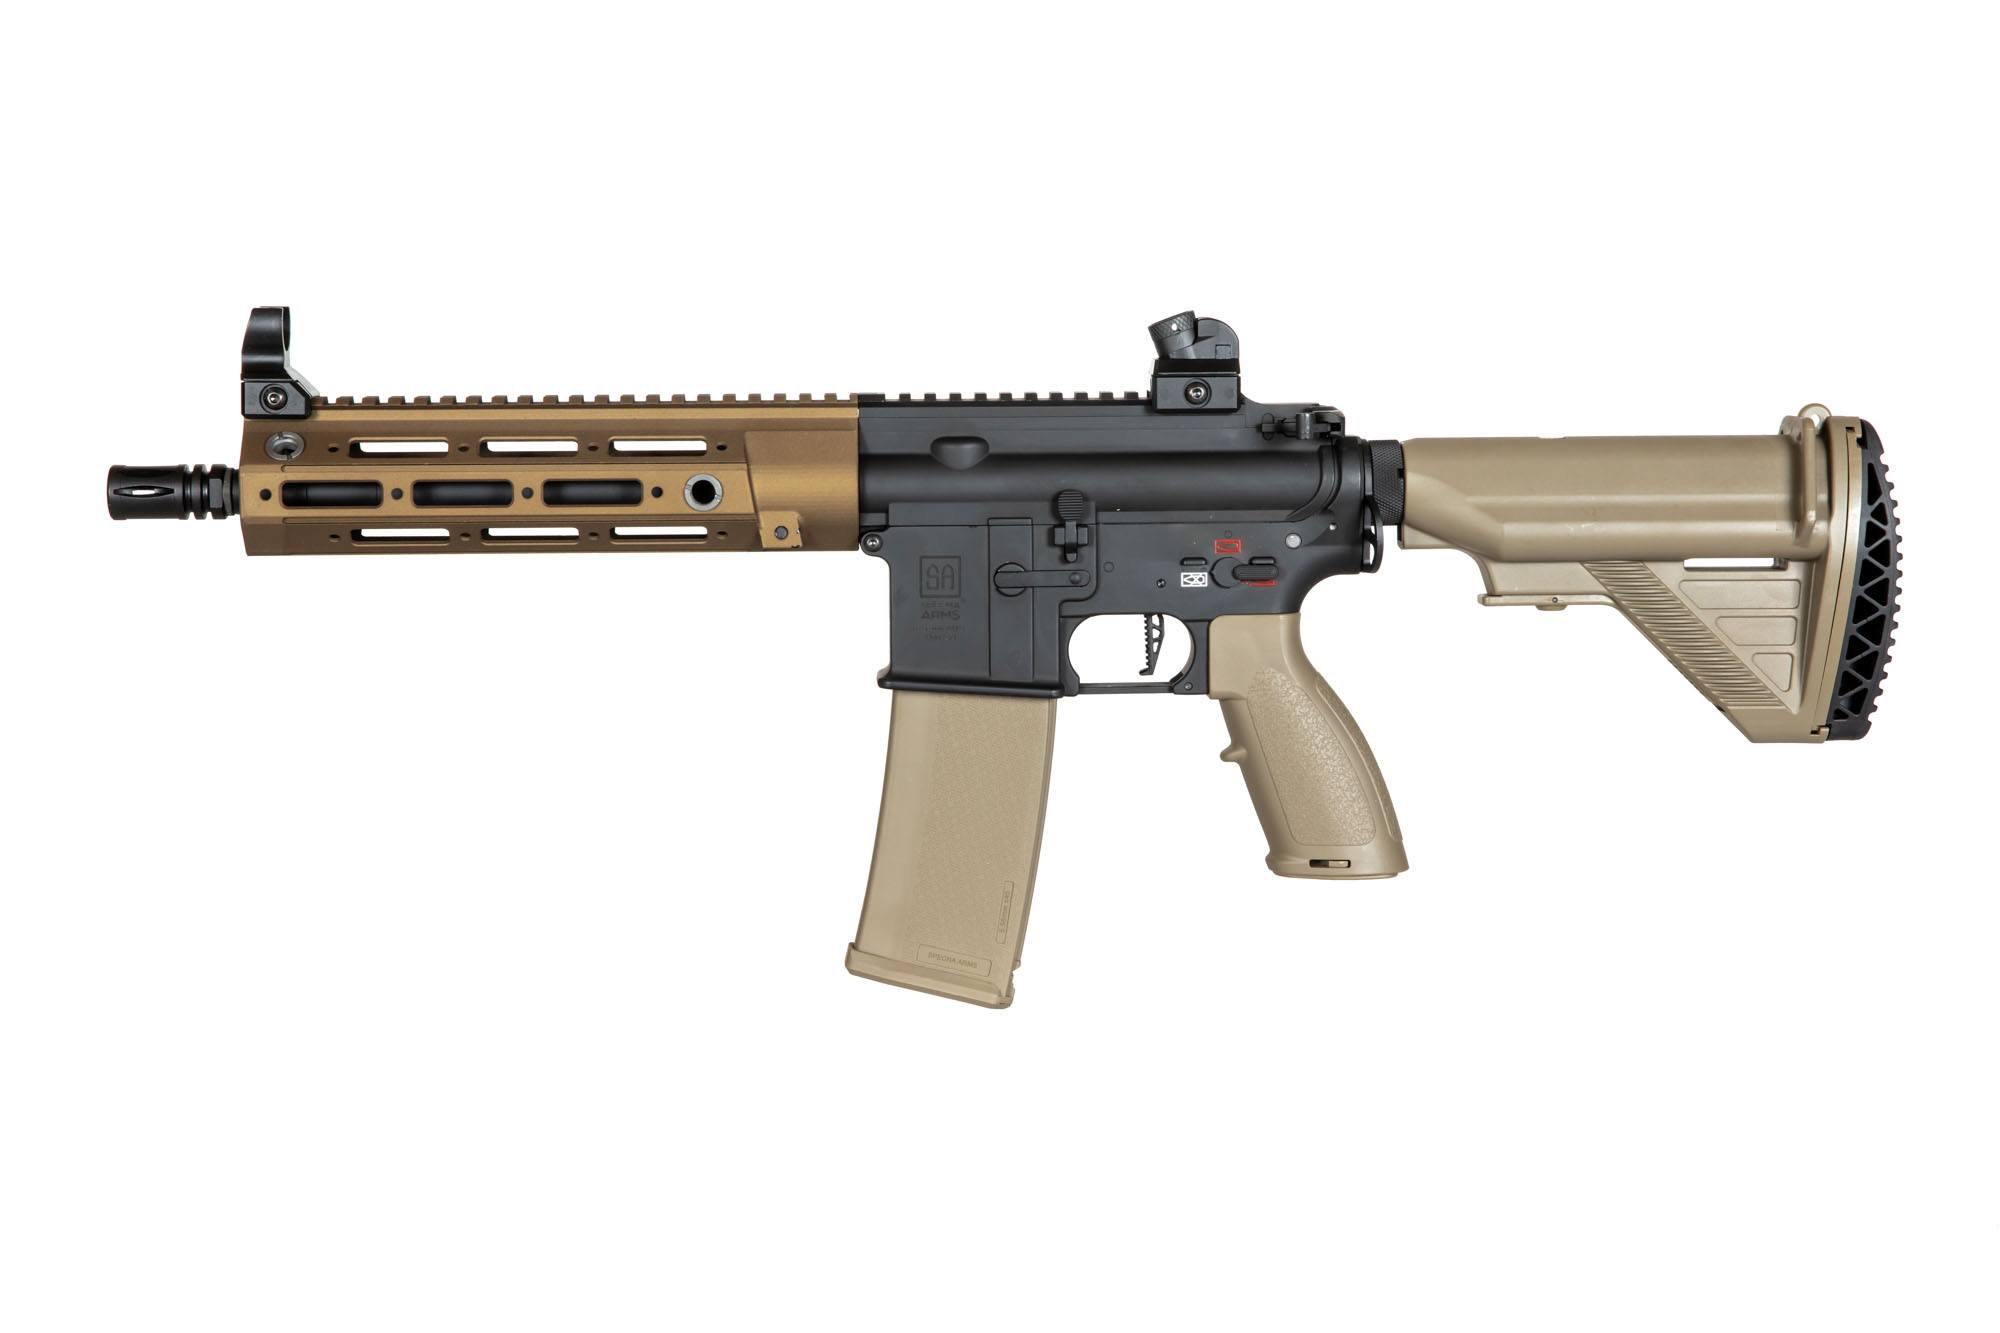 SA-H23 EDGE 2.0™ Carbine Replica - Chaos Bronze